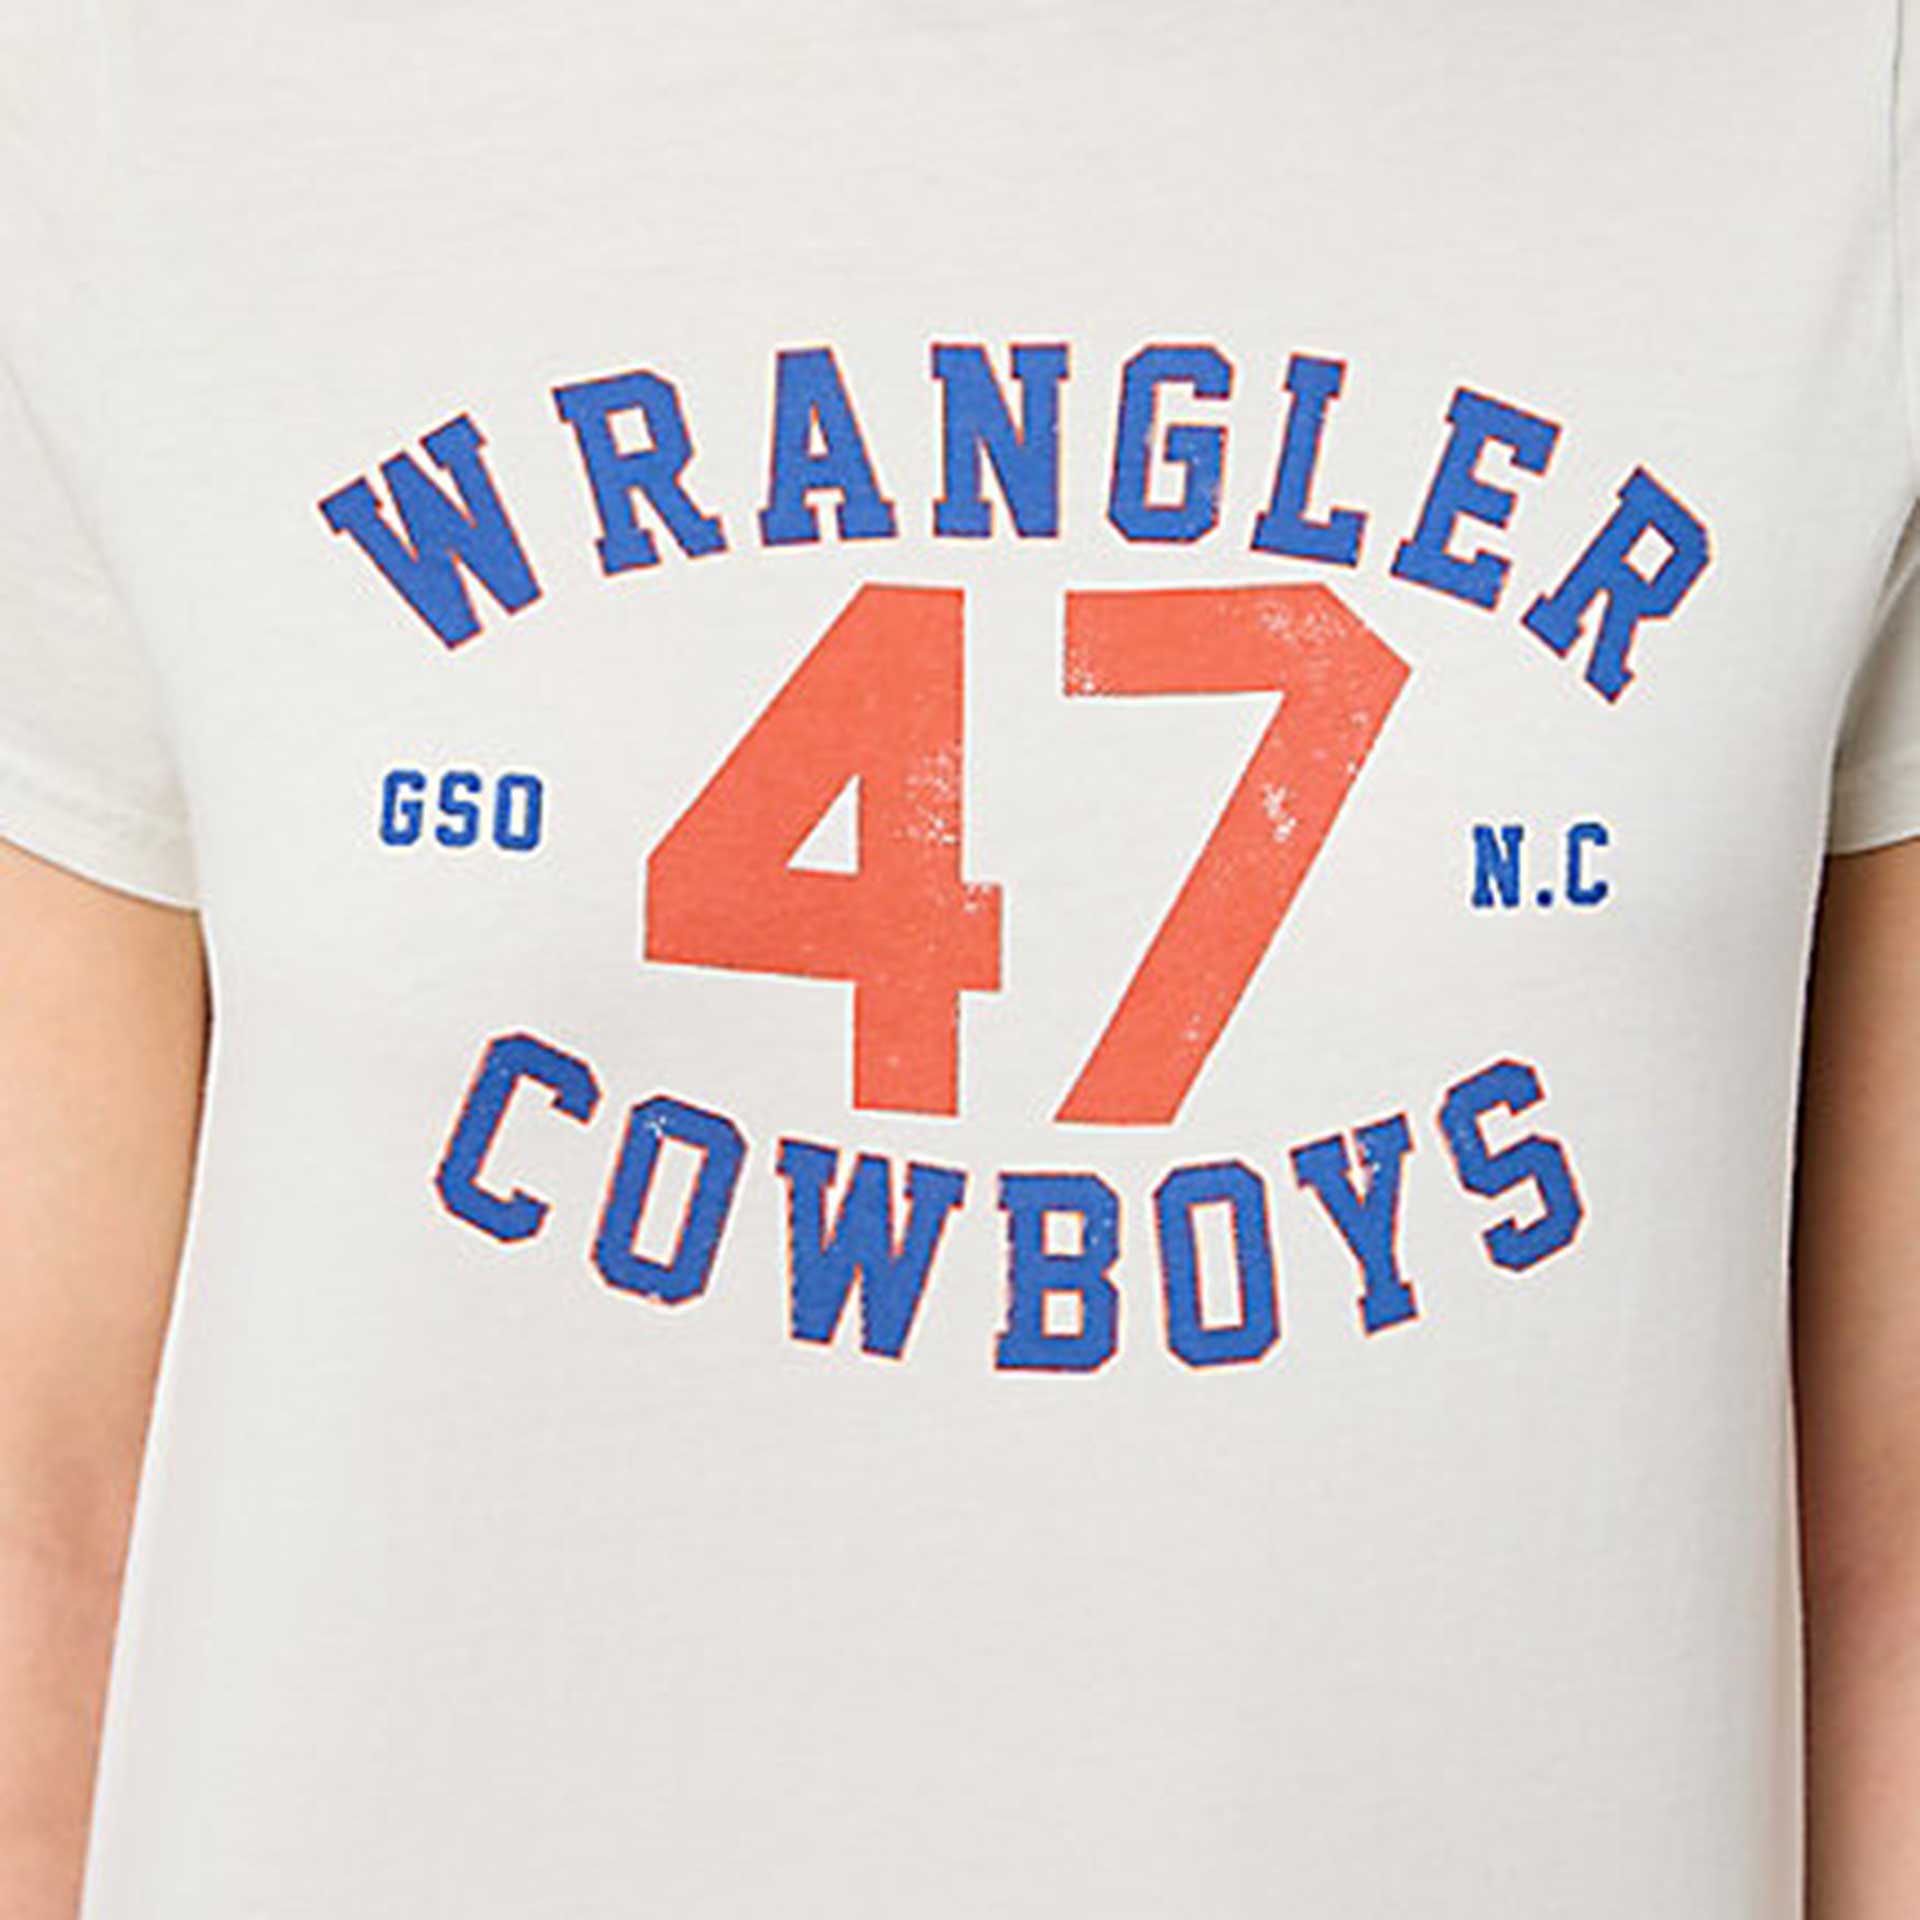 Wrangler T-shirt 5